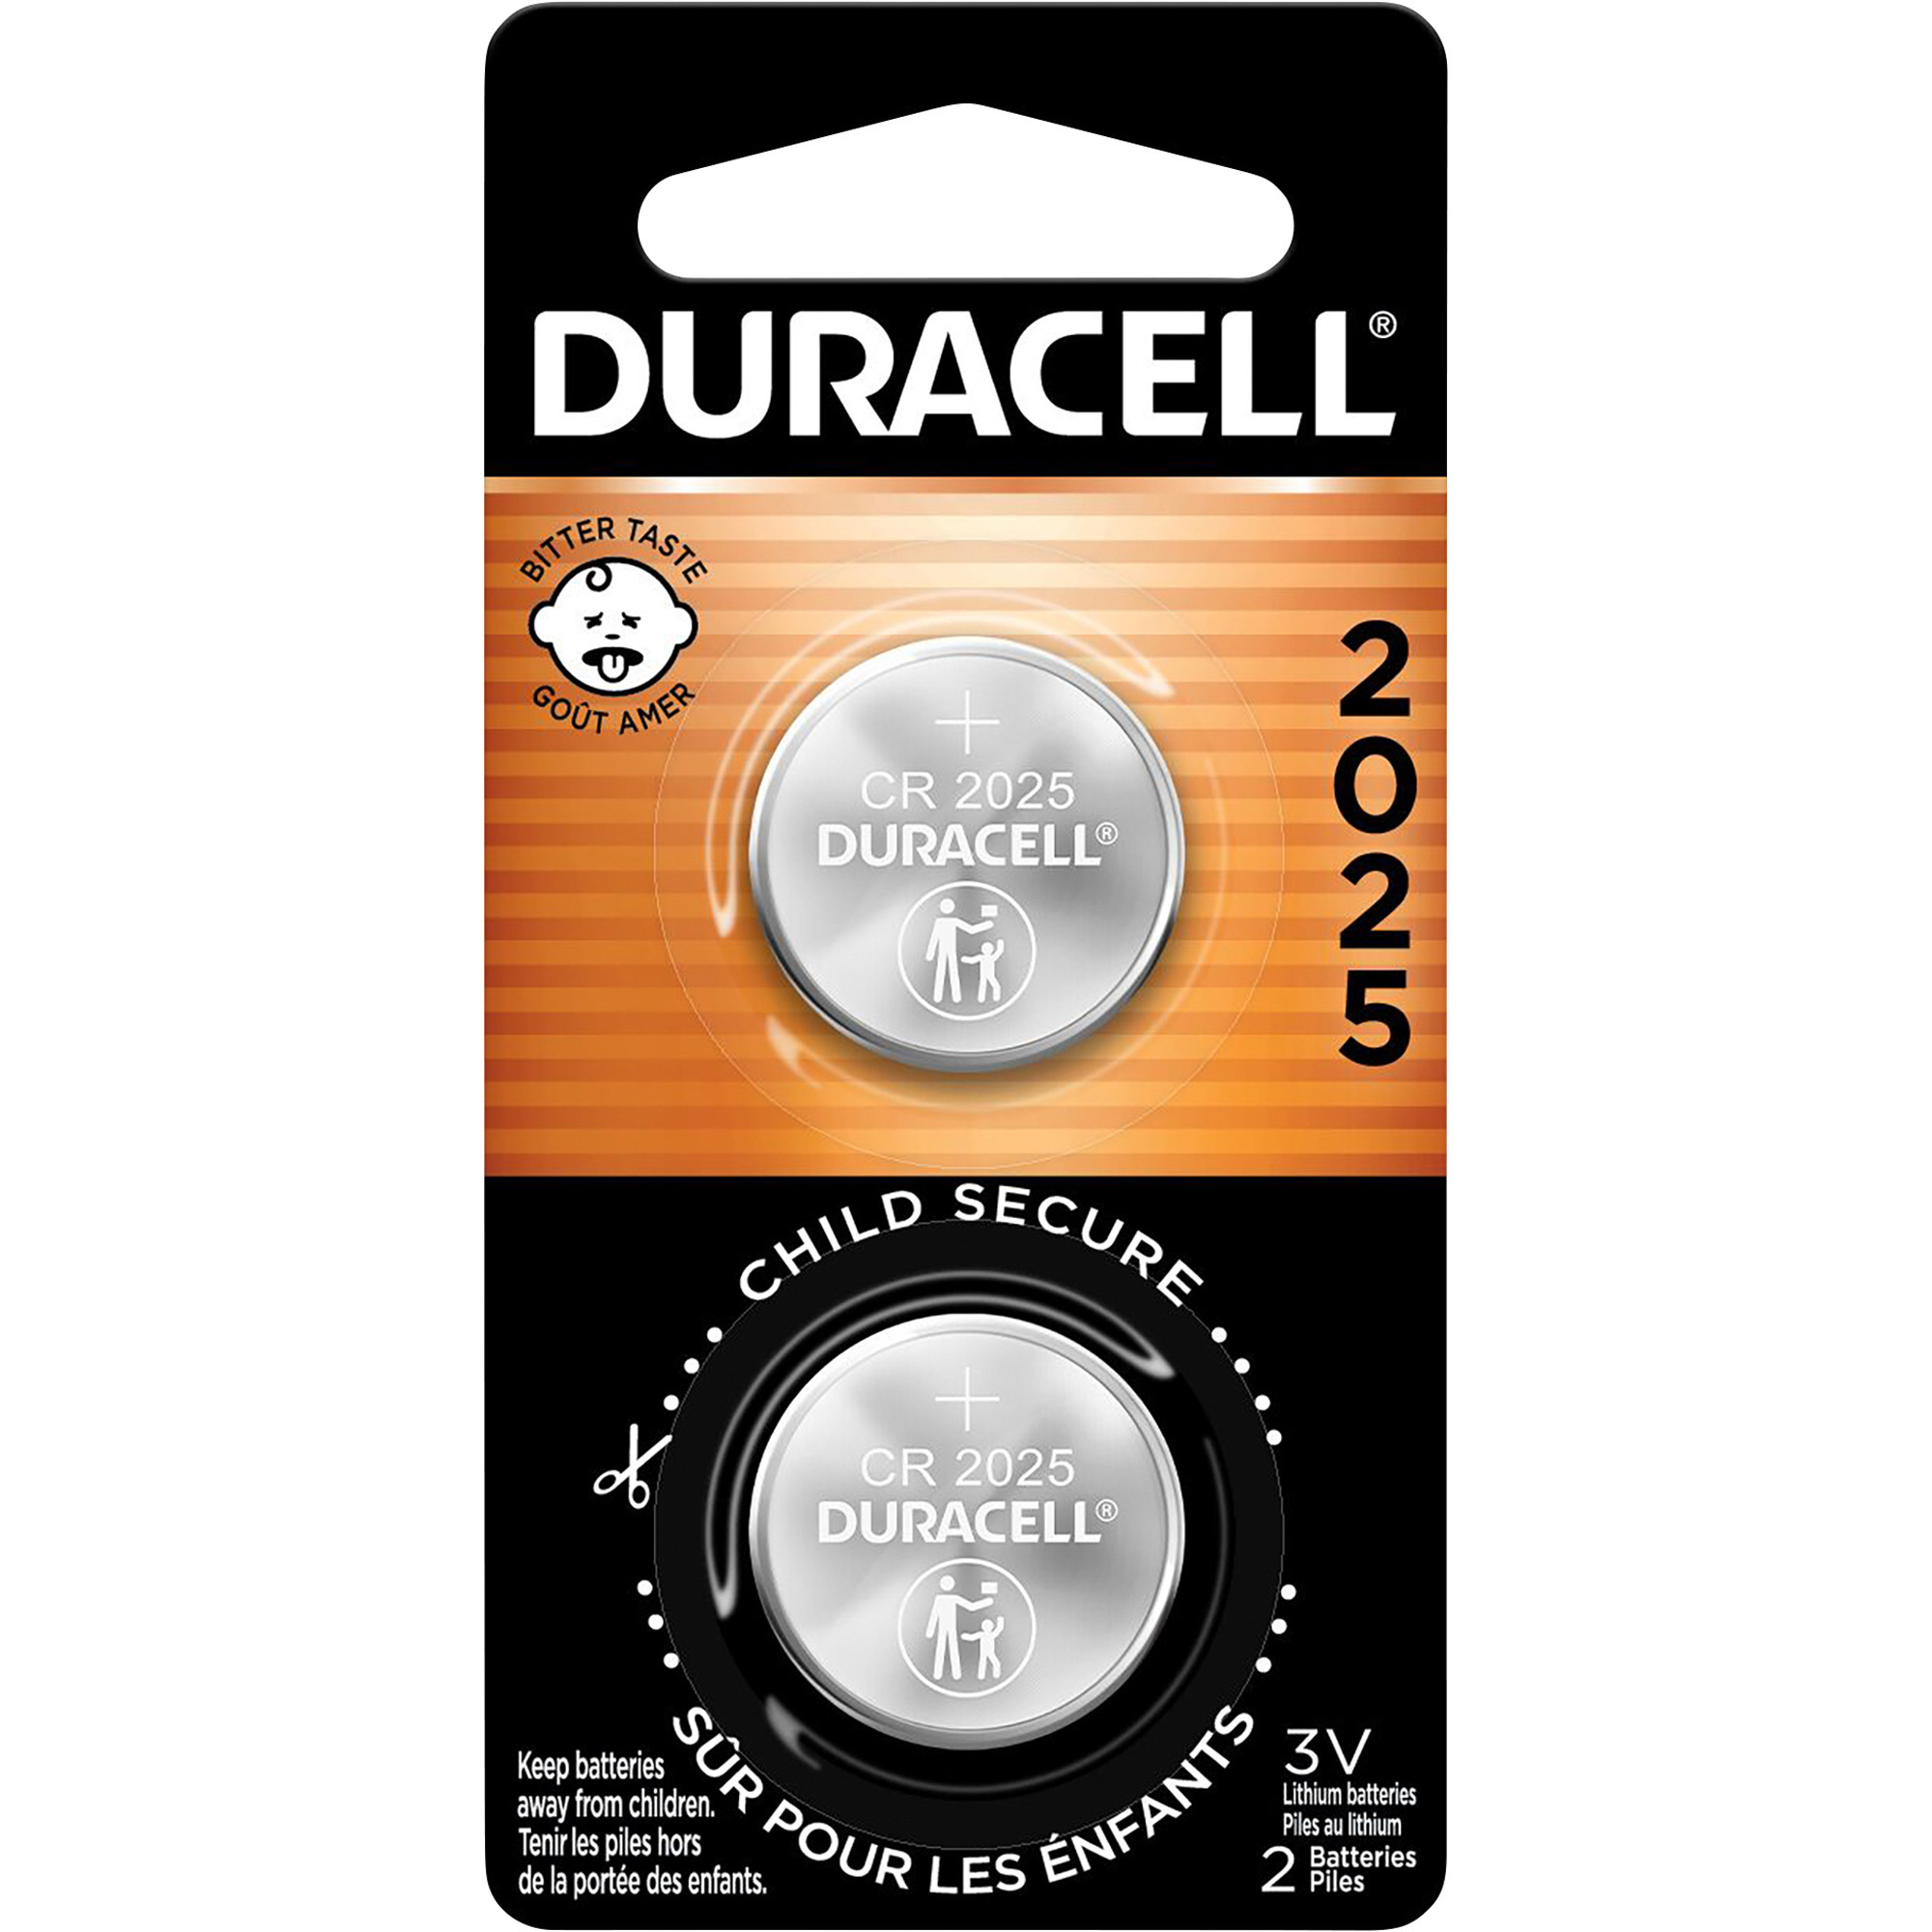 Duracell 2025 Lithium Coin Batteries â 2-Pack, Model DURDL2025B2PK